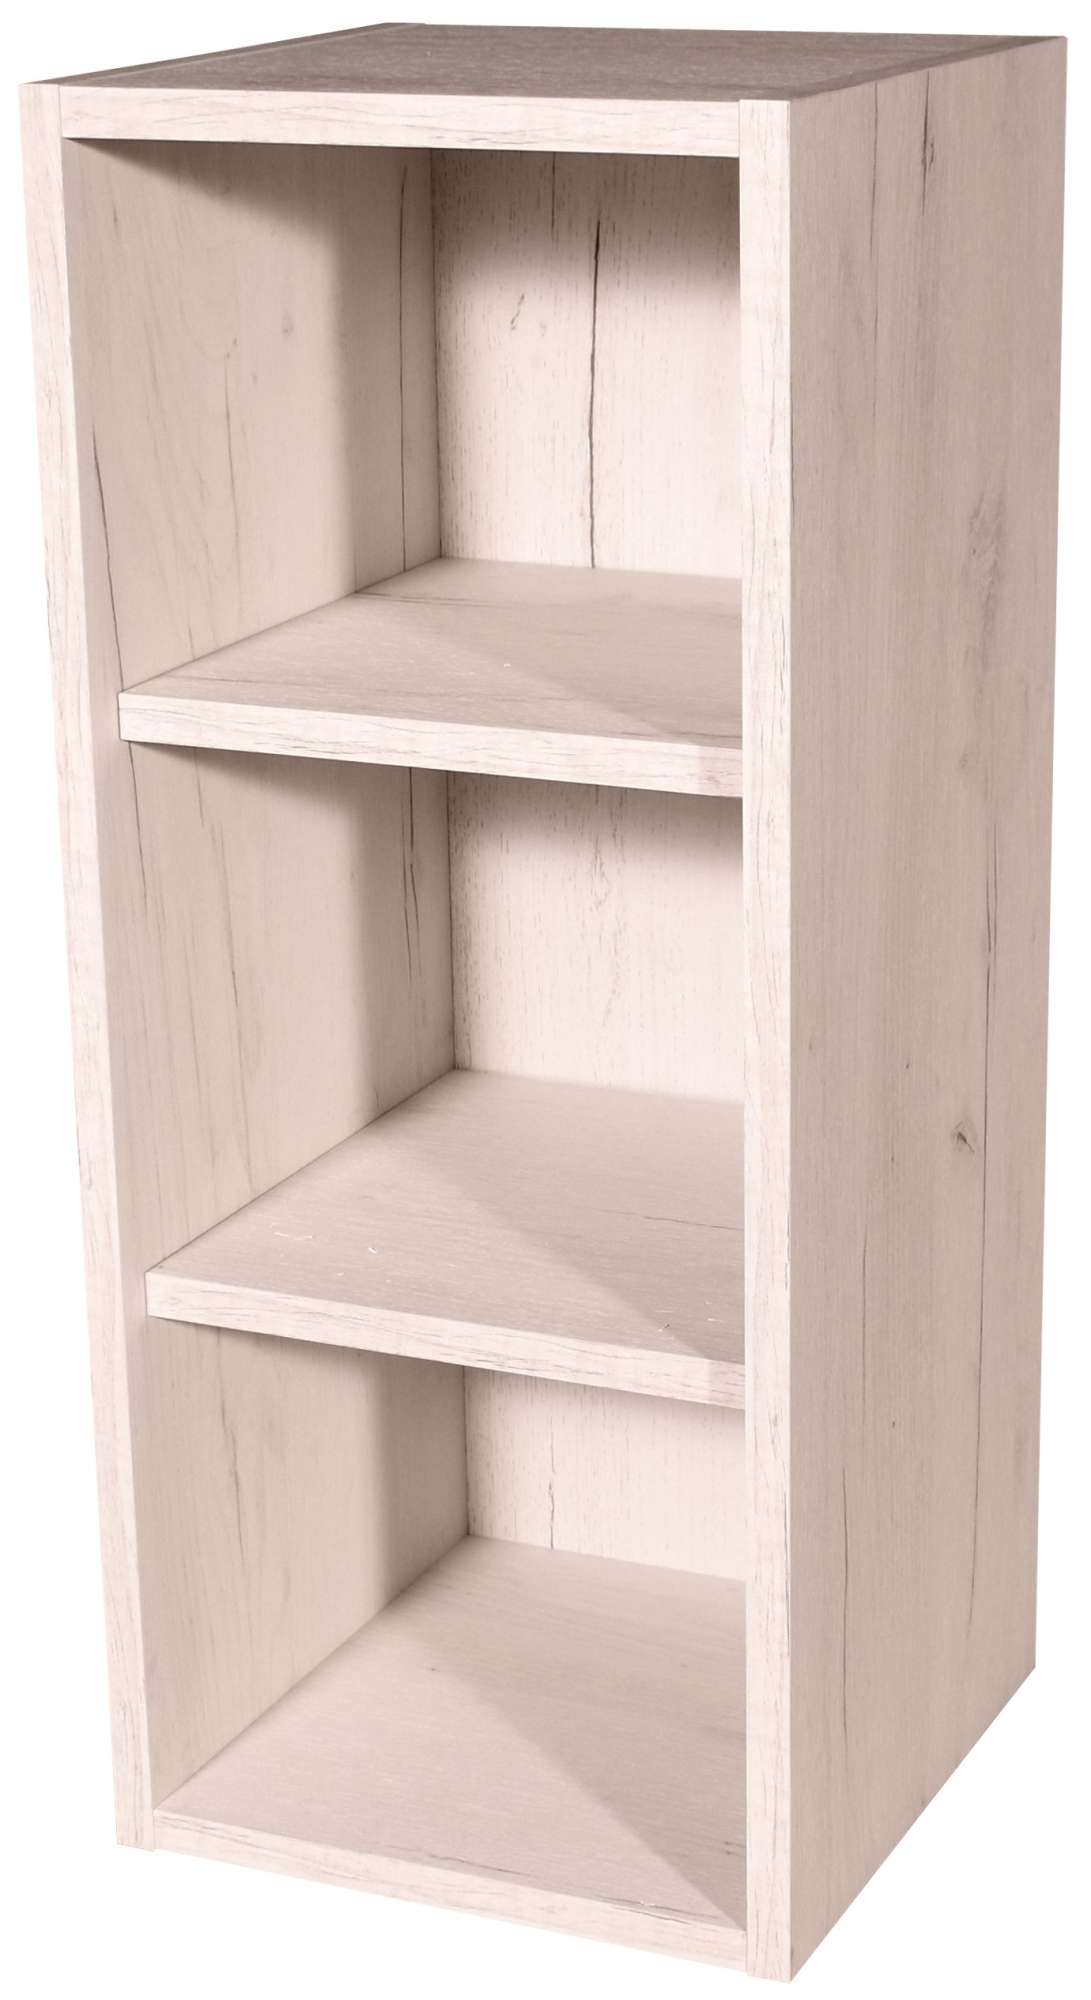 Kuchyňská skříňka horní s policemi 30 cm Craft bílý